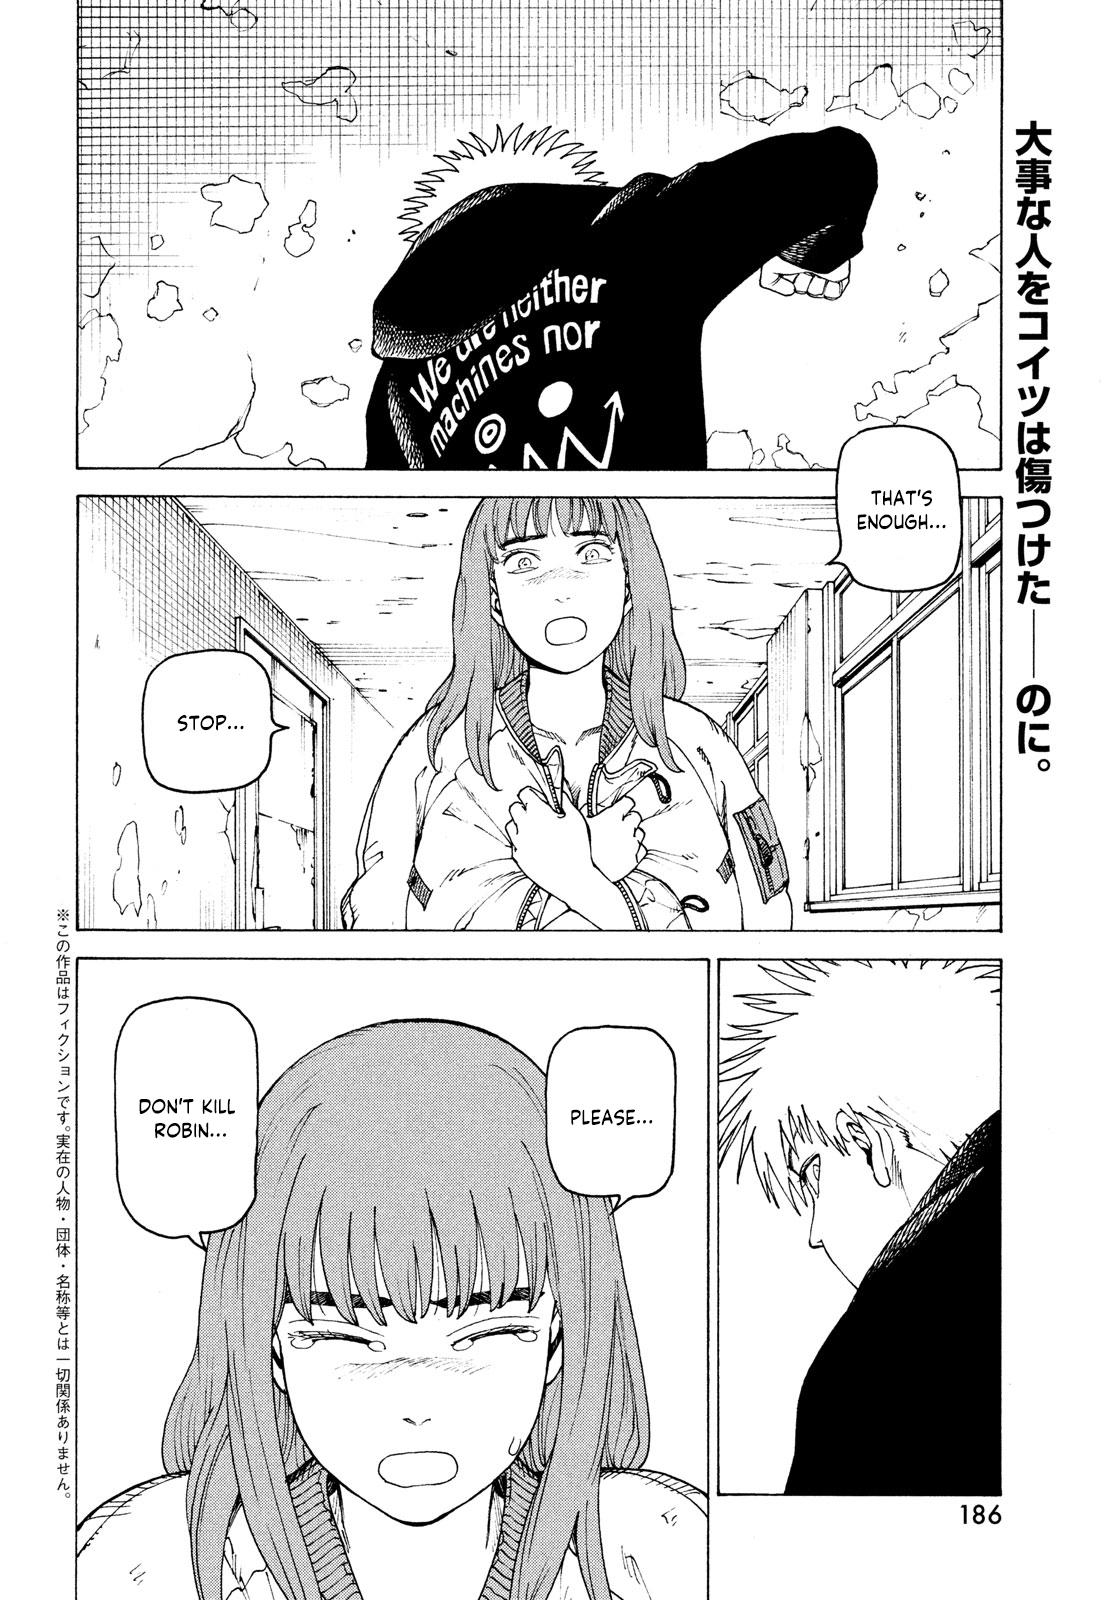 Tengoku Daimakyou Chapter 34: Inazaki Robin ➂ page 2 - Mangakakalot